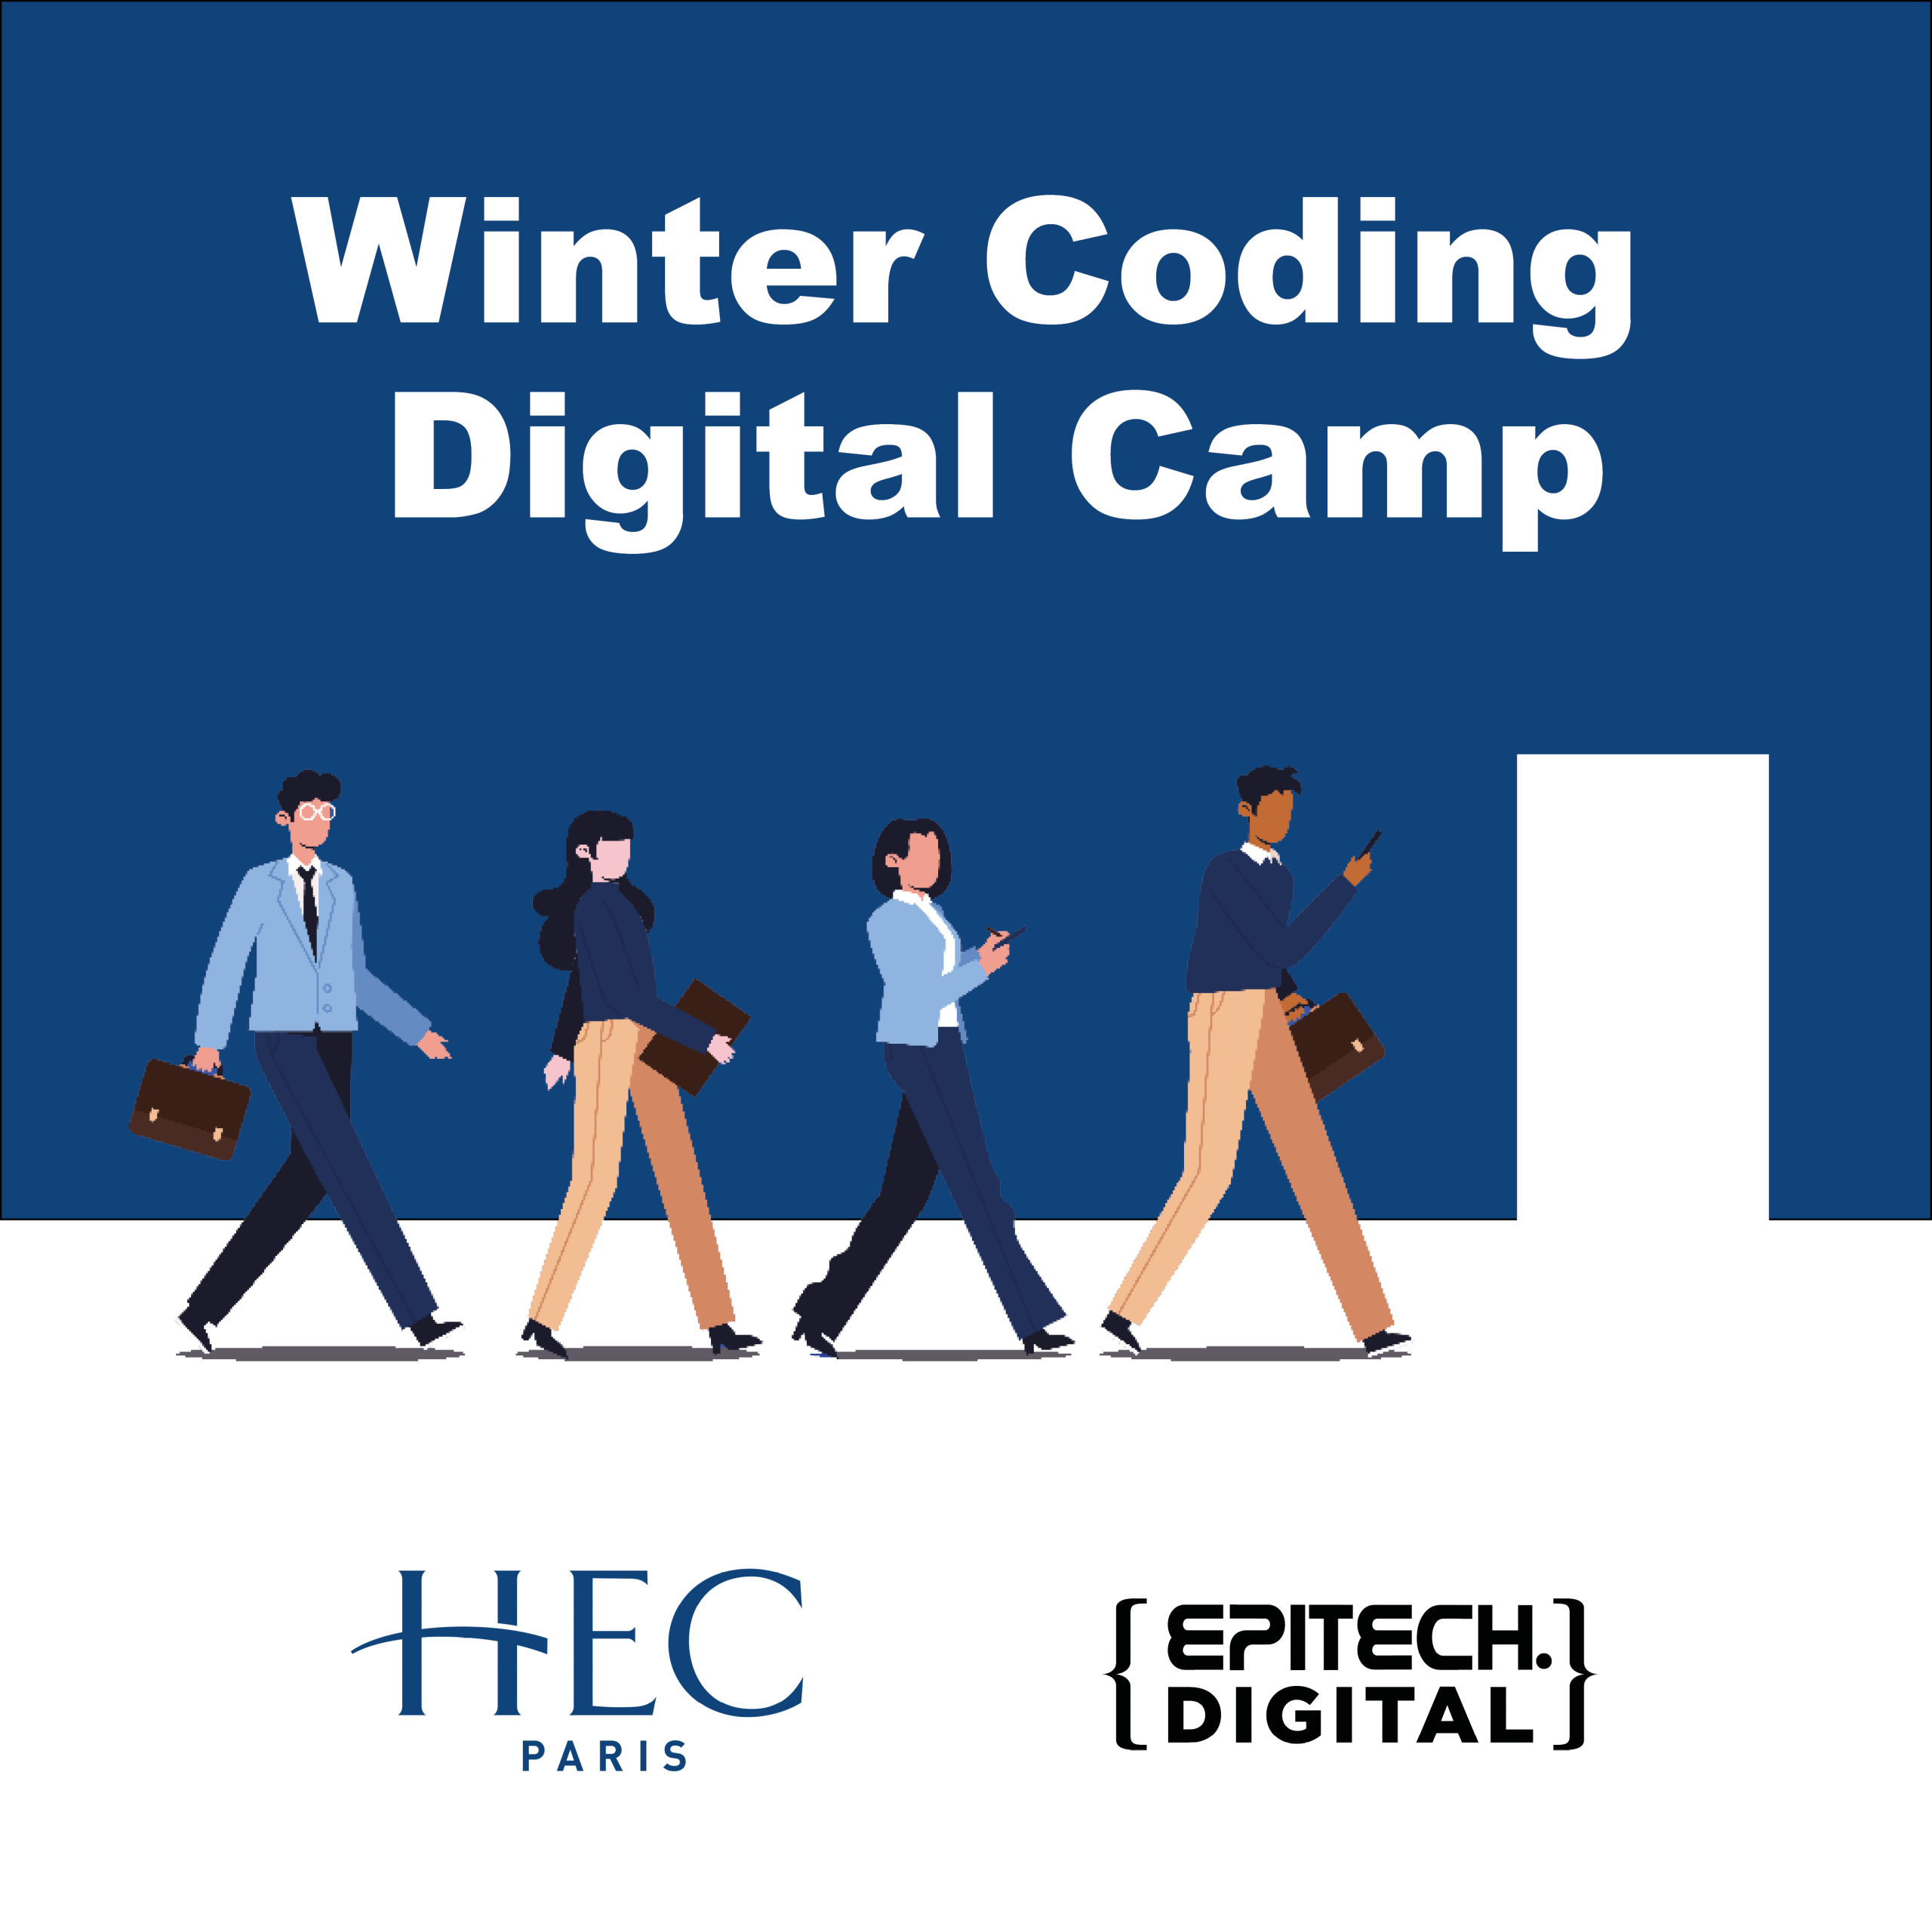 Epitech Digital partage son savoir-faire aux étudiants HEC